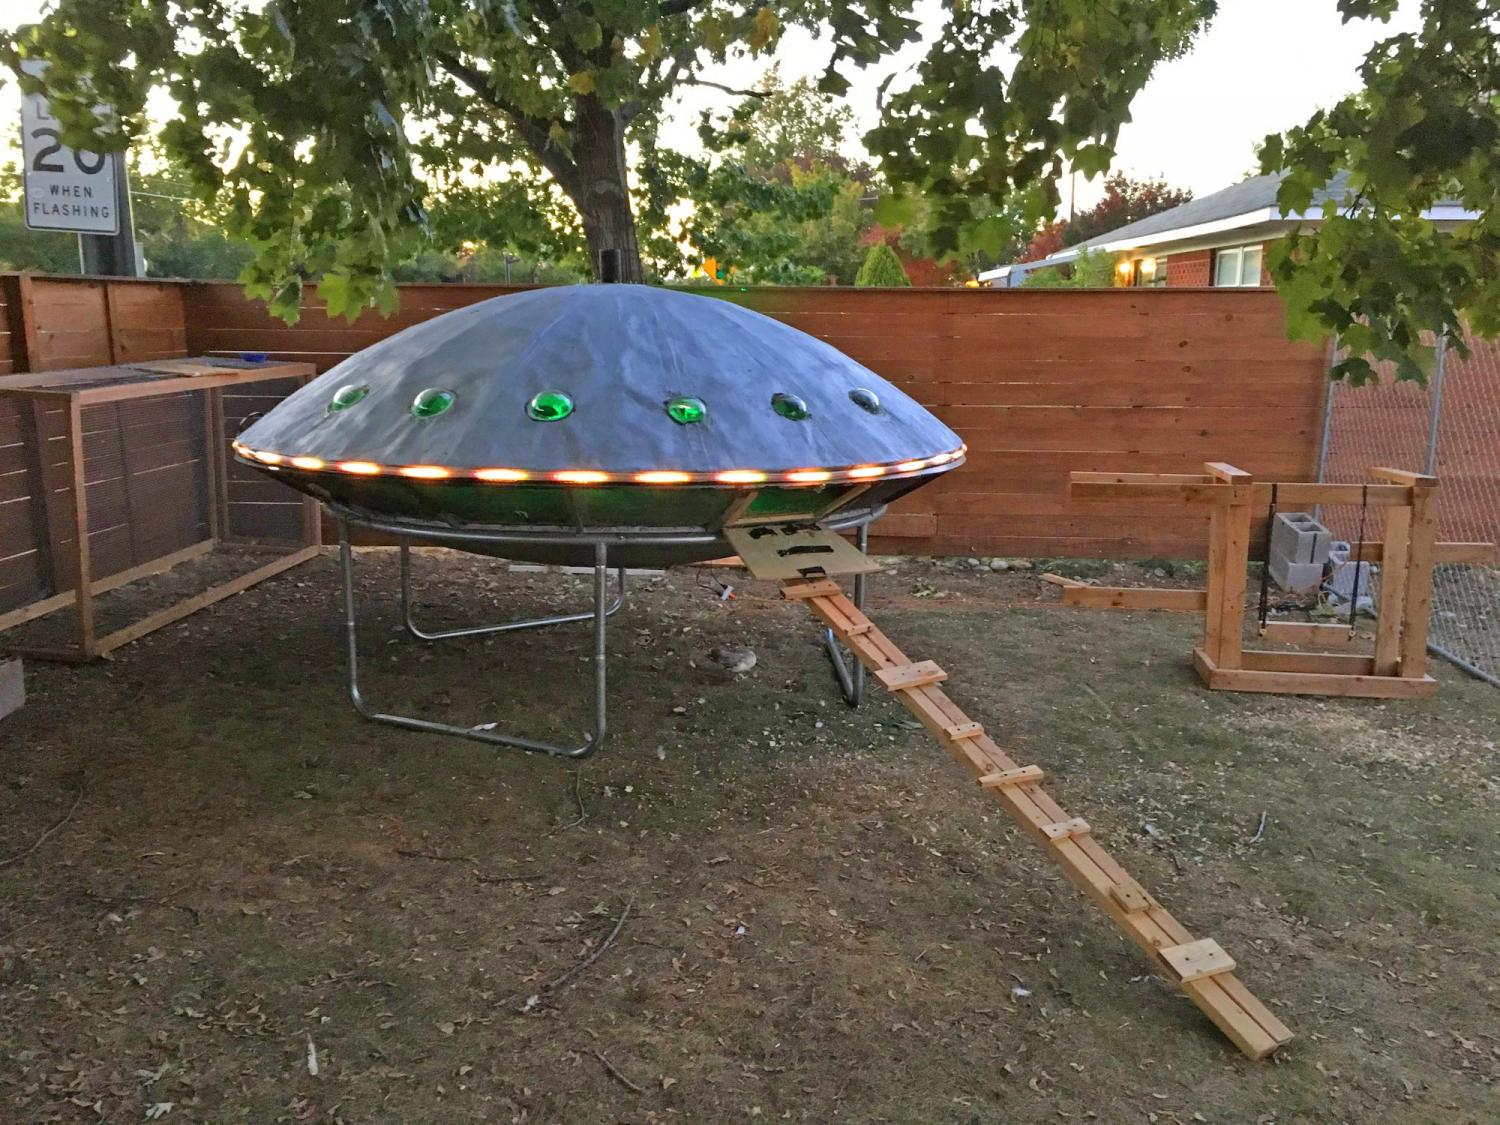 UFO Chicken Coop - Aliens Flying Saucer Chicken Coop DIY project